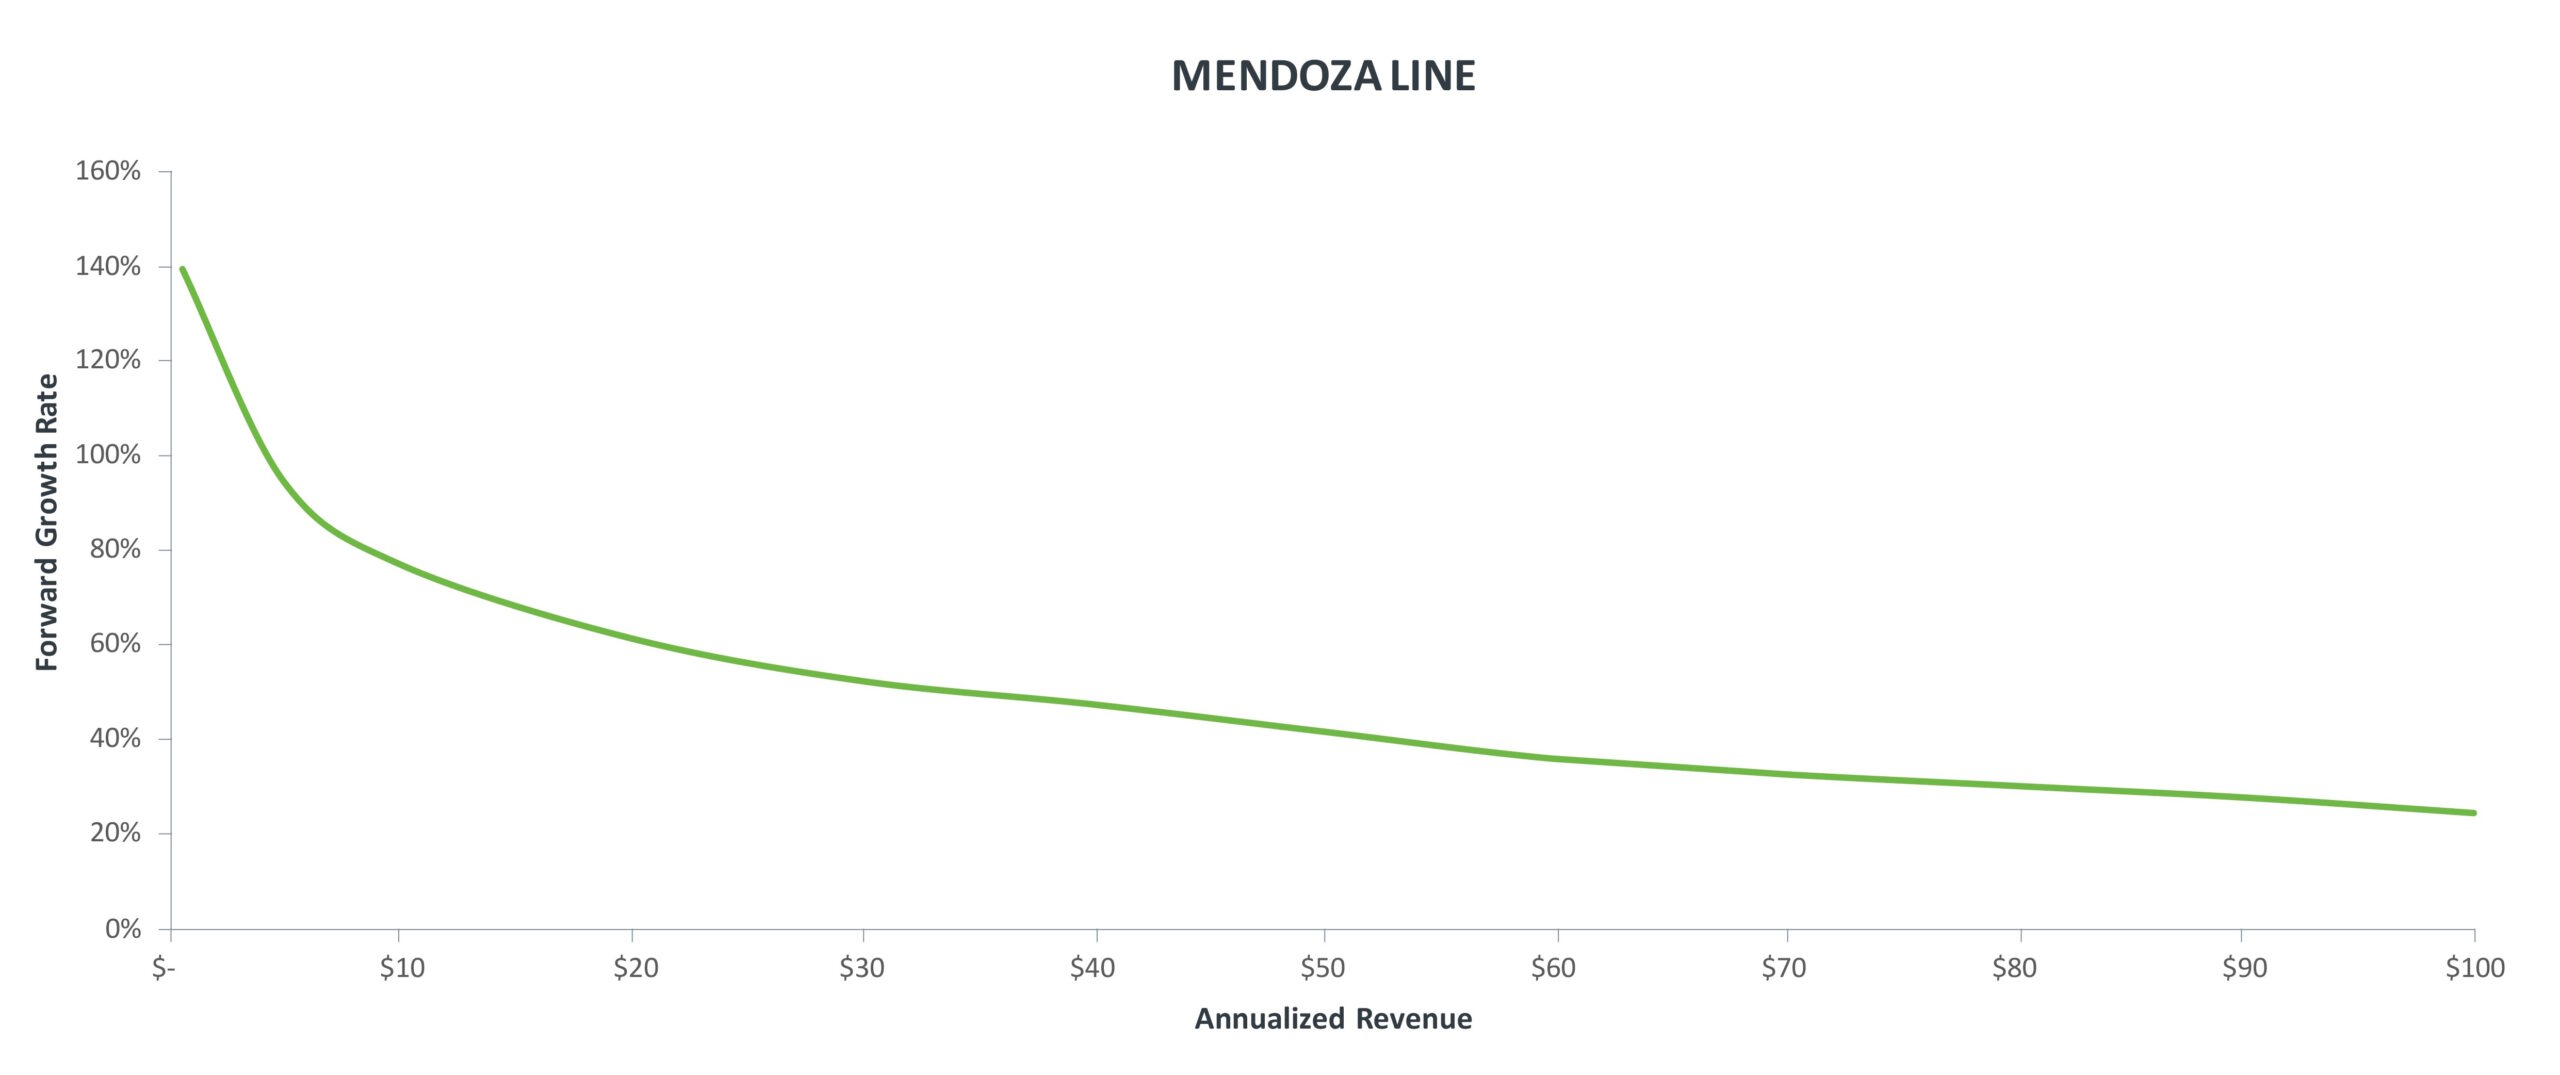 Understanding the Mendoza Line